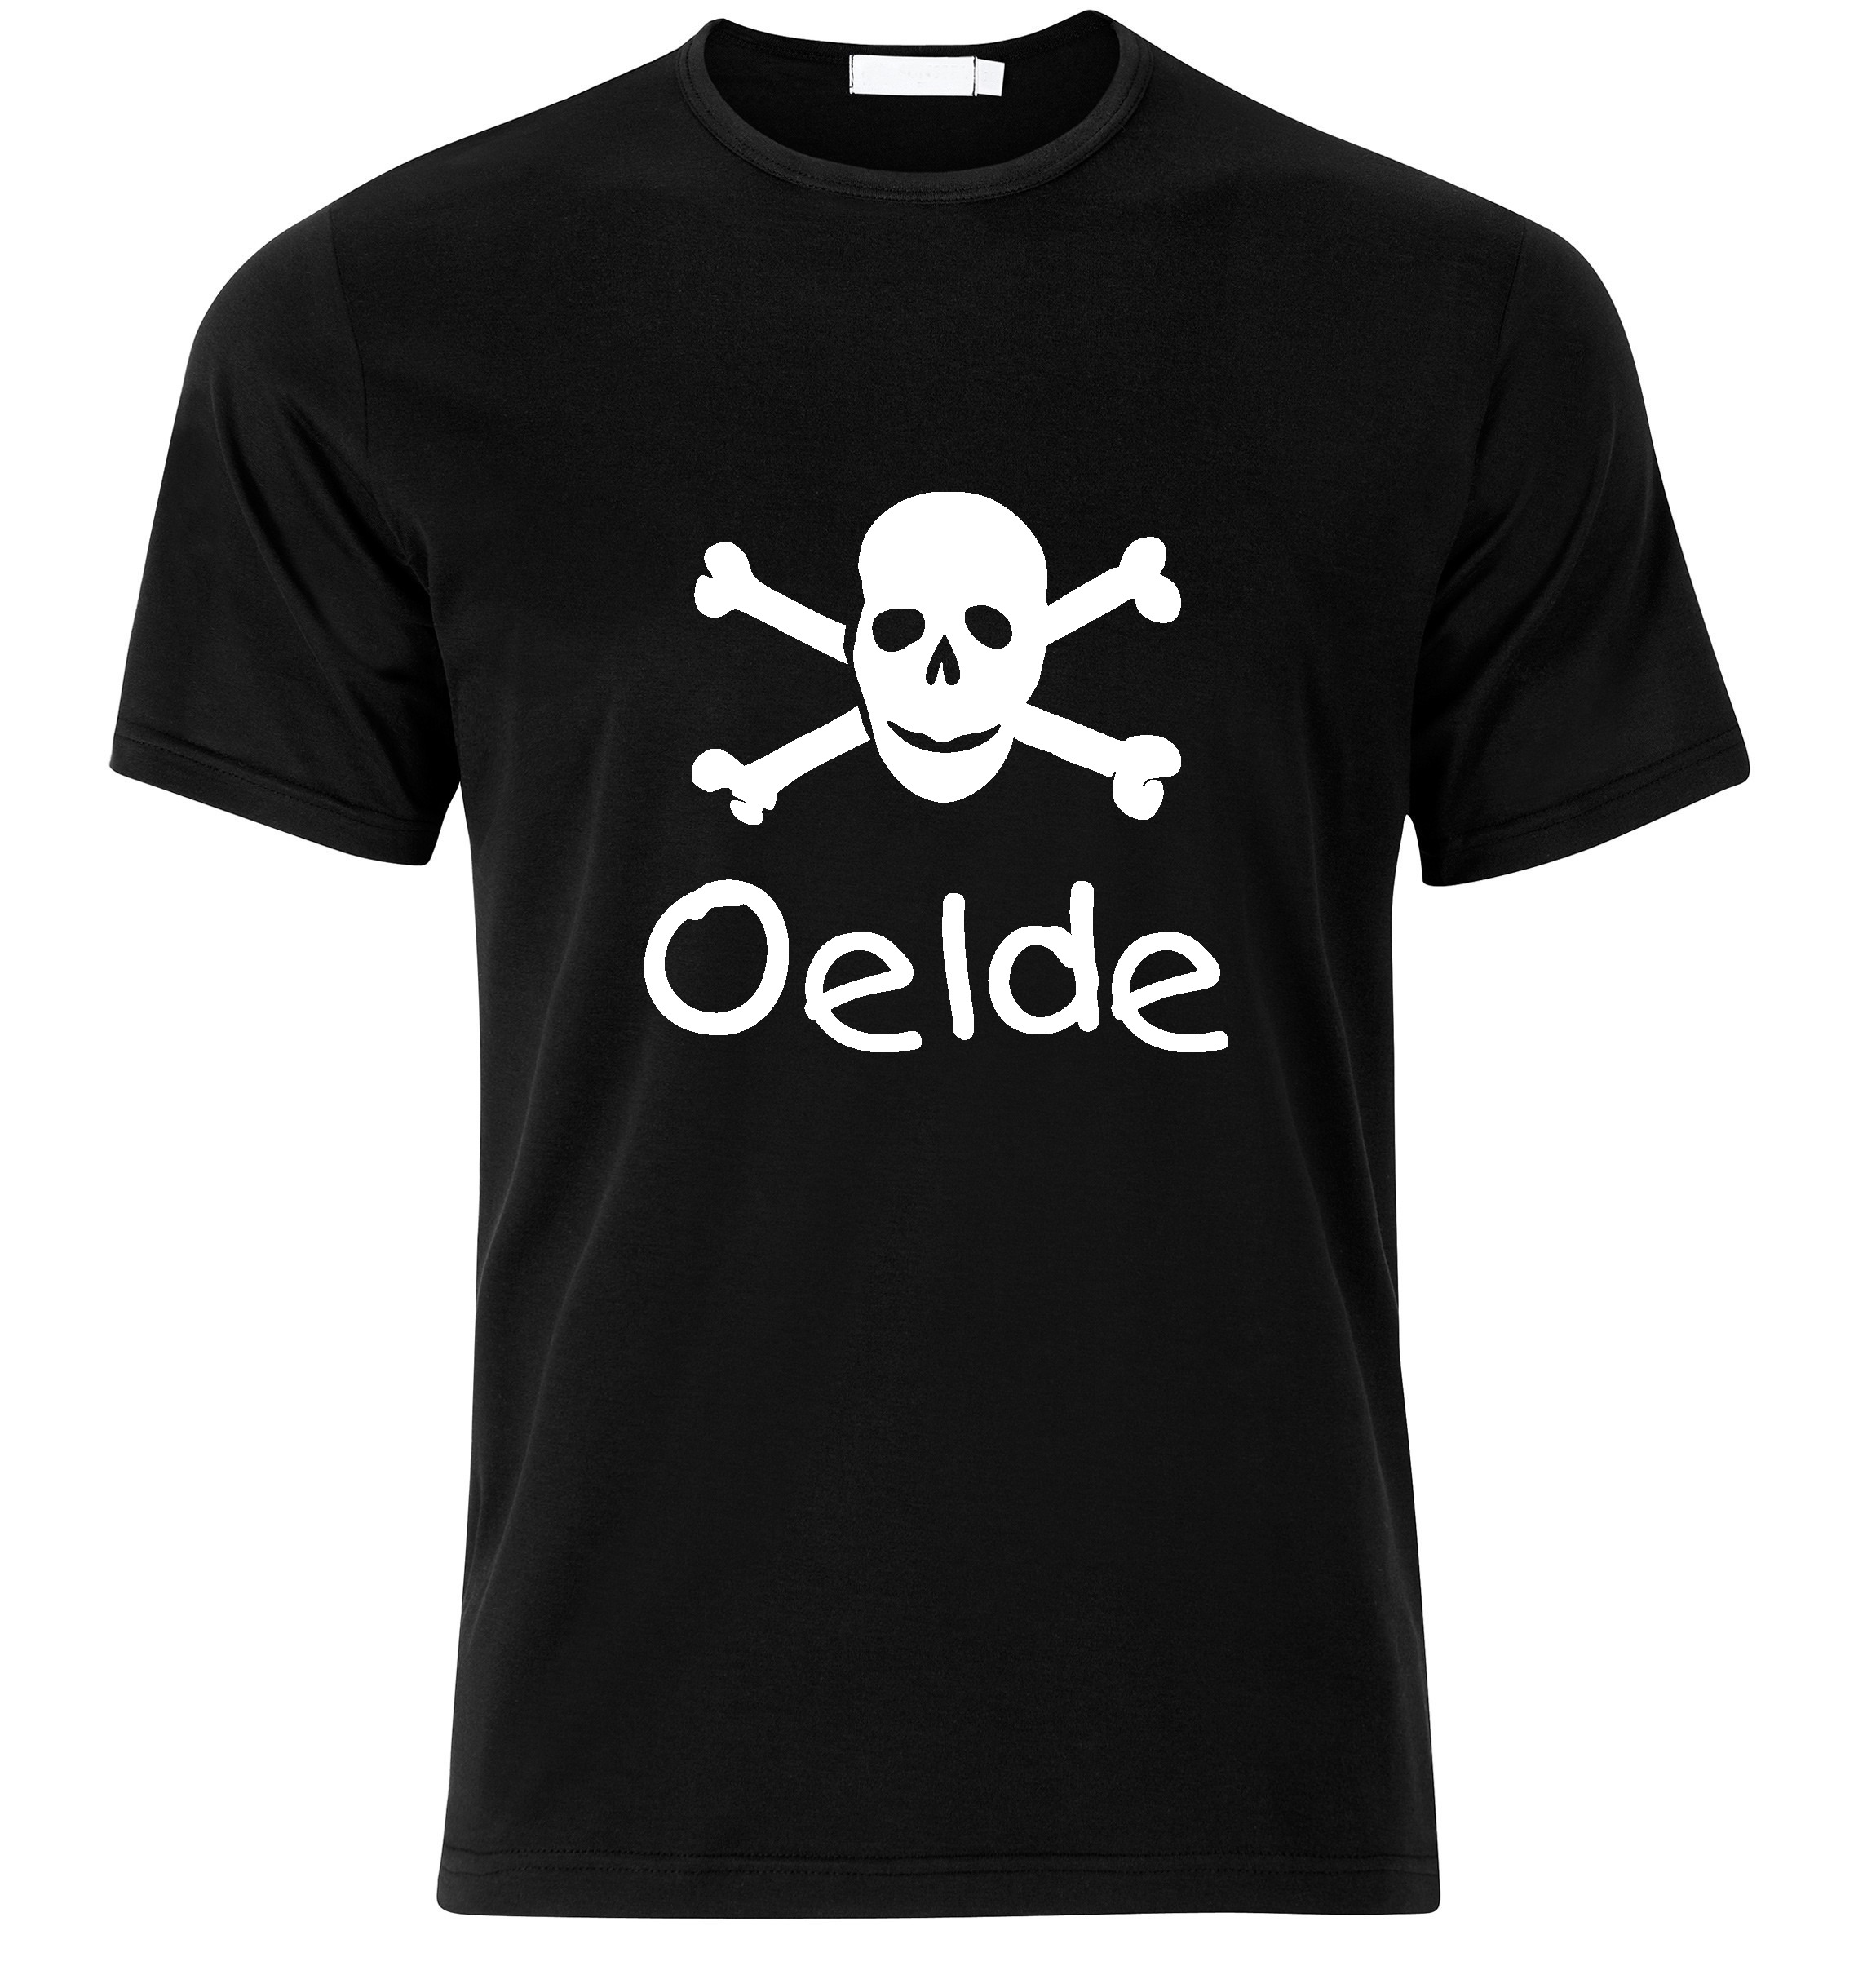 T-Shirt Oelde Jolly Roger, Totenkopf